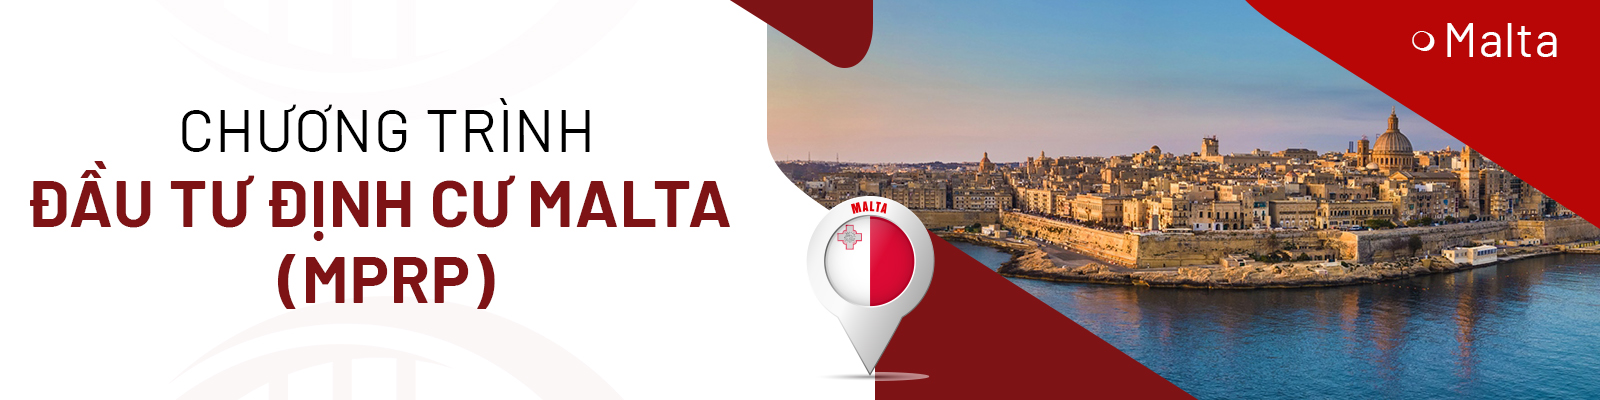 Chương trình đầu tư định cư Malta